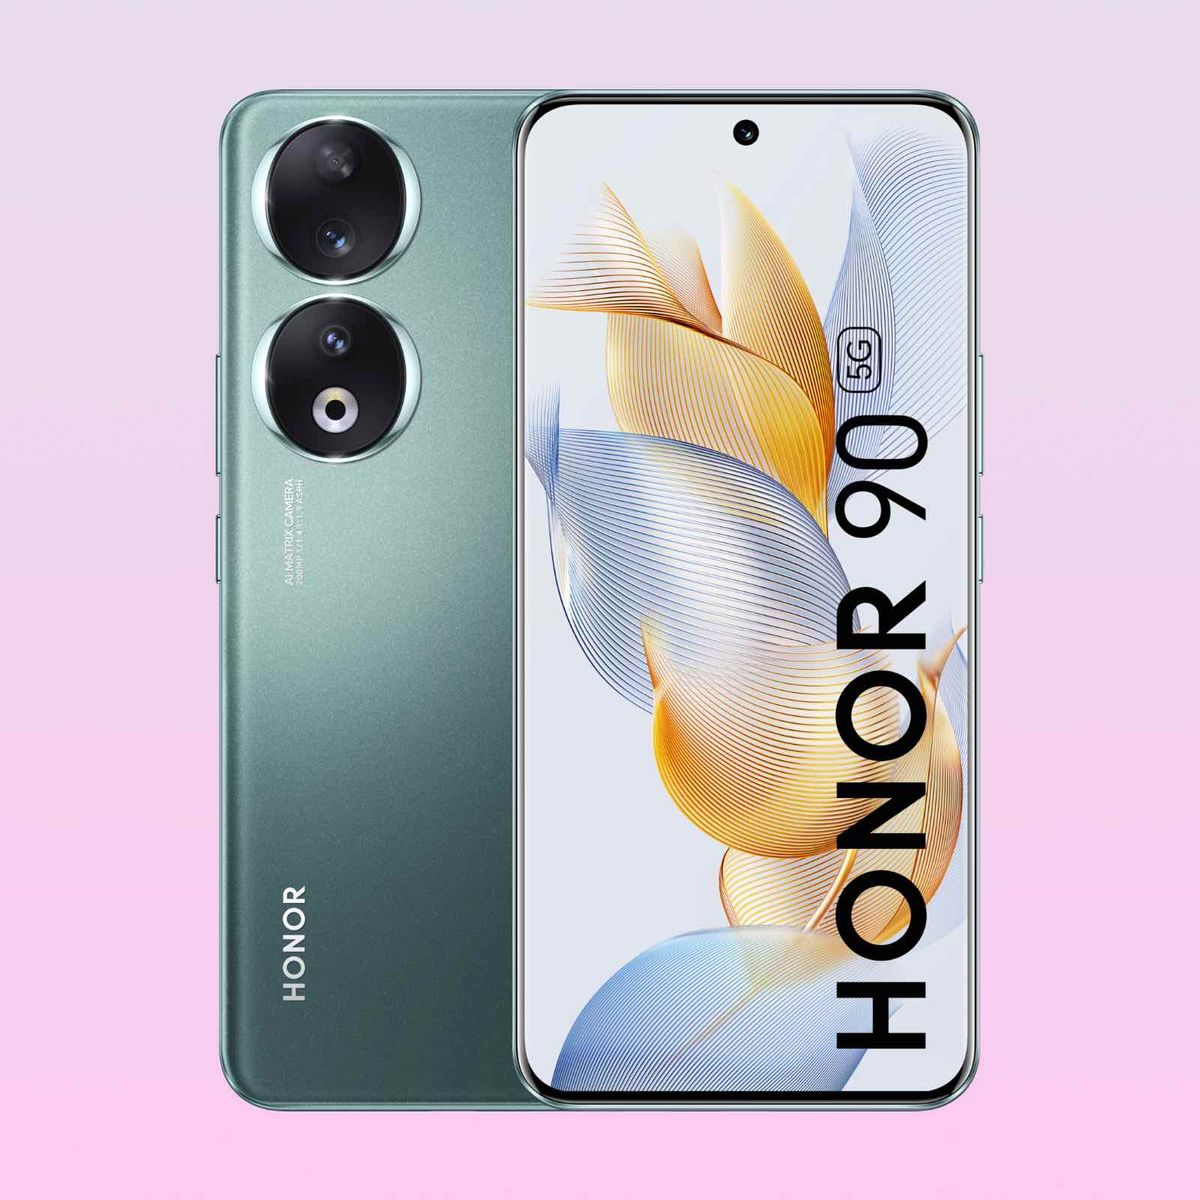 Honor lanzó Honor 90 y el Honor 90 Pro con diseño de cristal - TyN